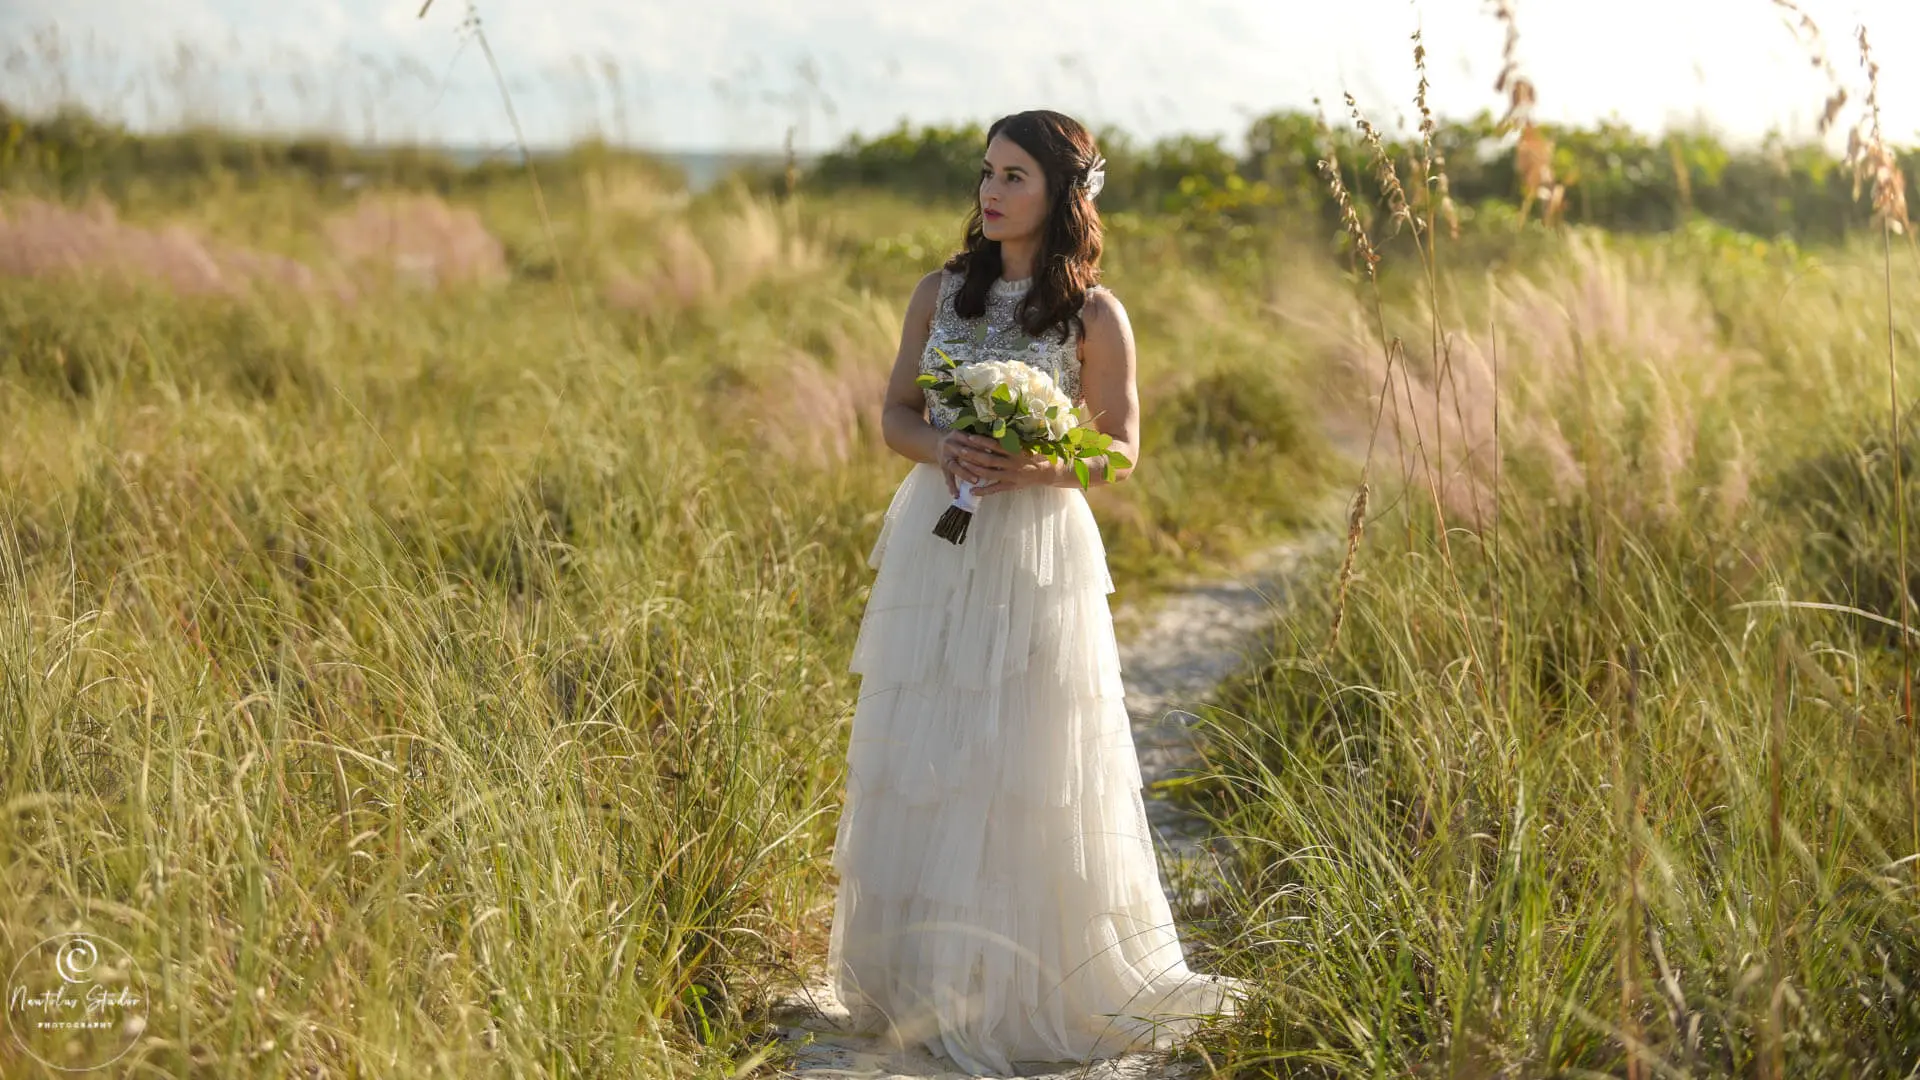 Boda simbólica Florida, imagen de la novia de pie en el camino